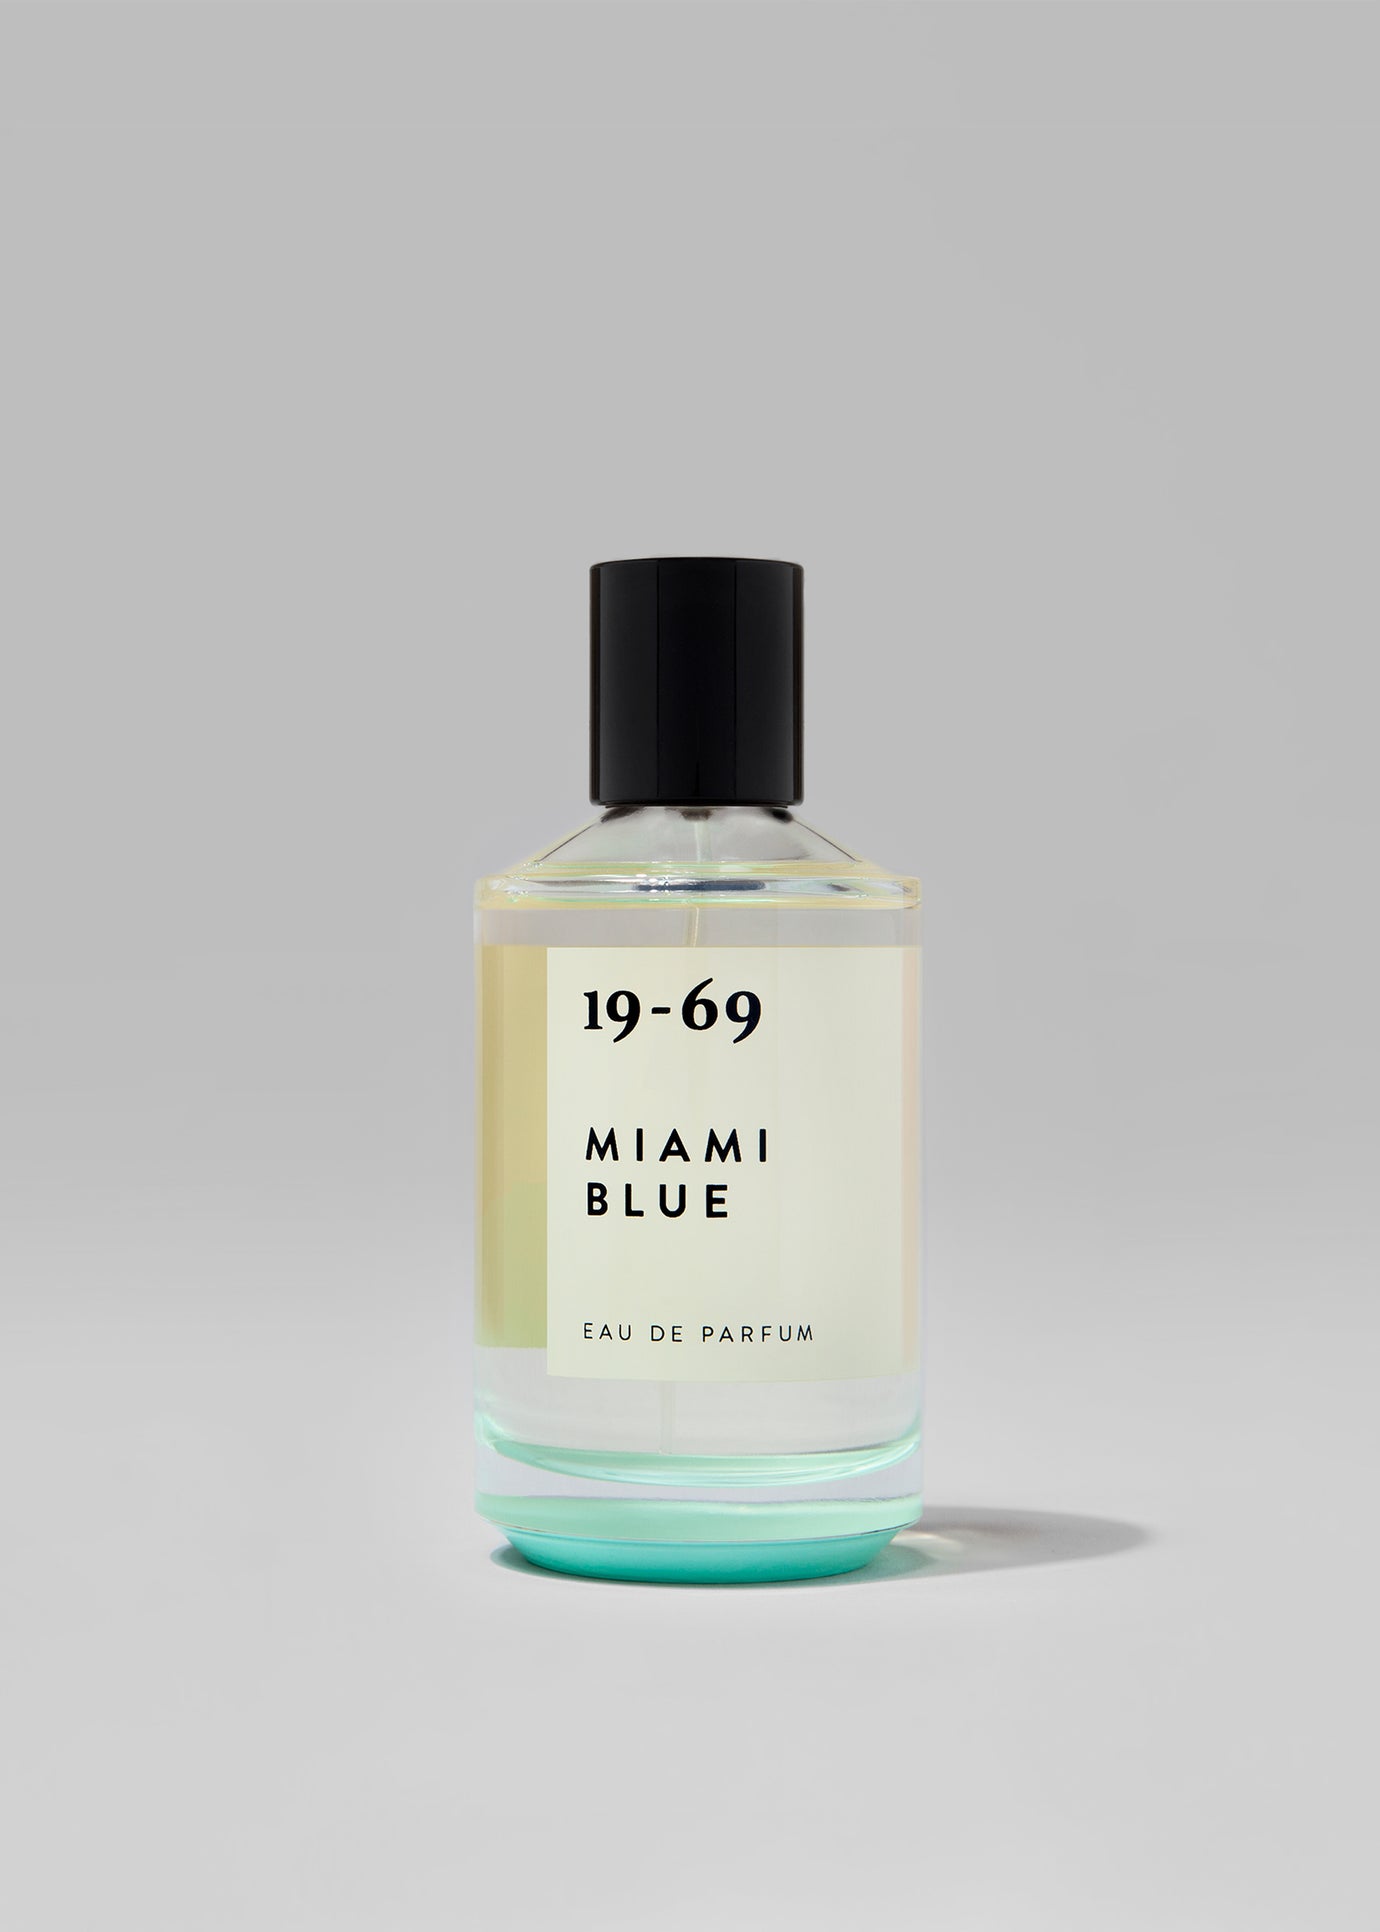 19-69 Miami Blue Eau de Parfum